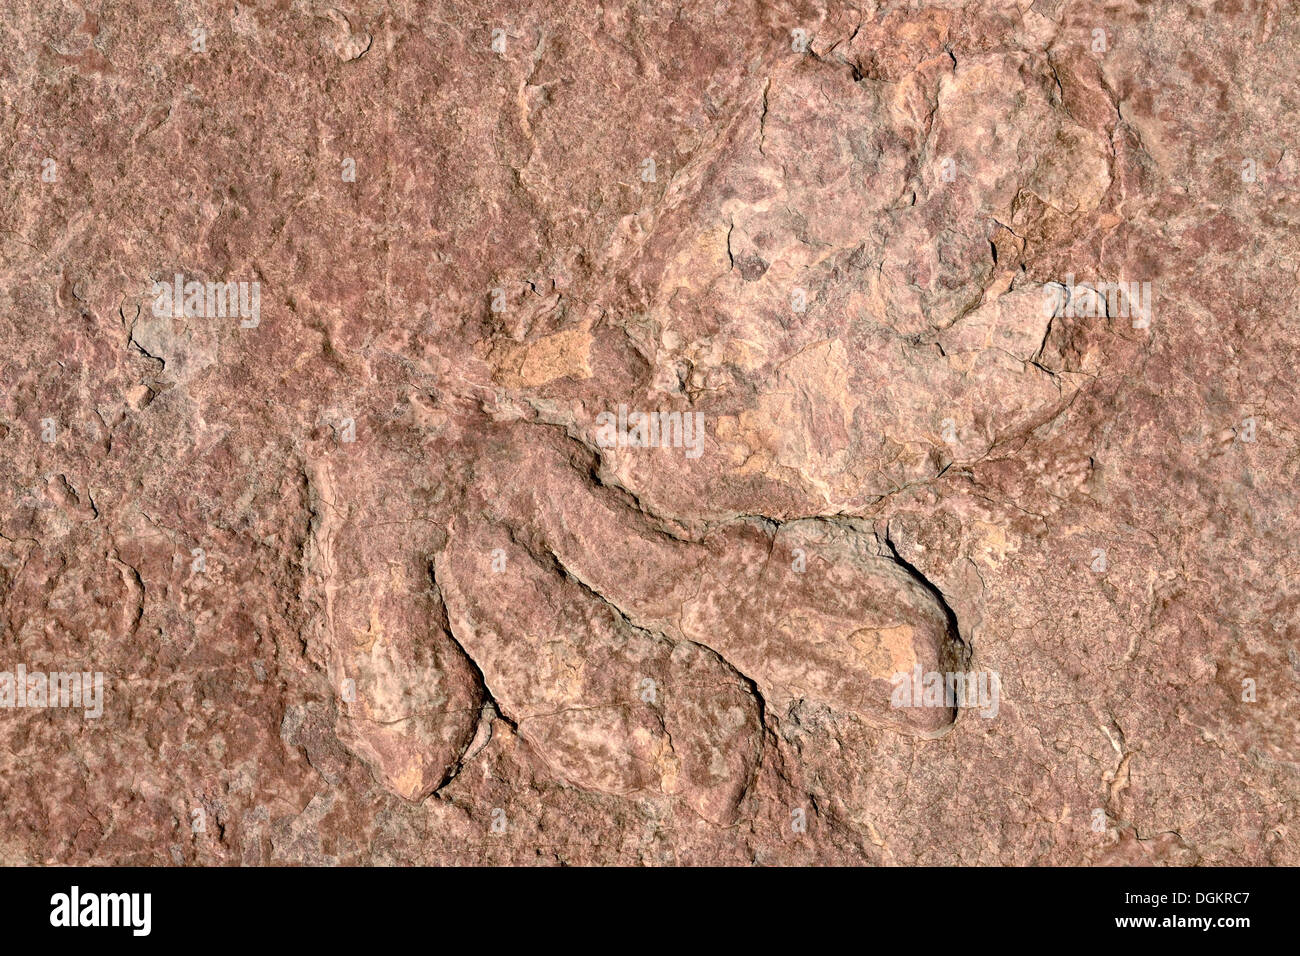 Huellas fosilizadas de un dinosaurio, Dilophosaurus, parcialmente conservados, unos 170 millones de años de edad jurásica de arenisca Navajo Foto de stock